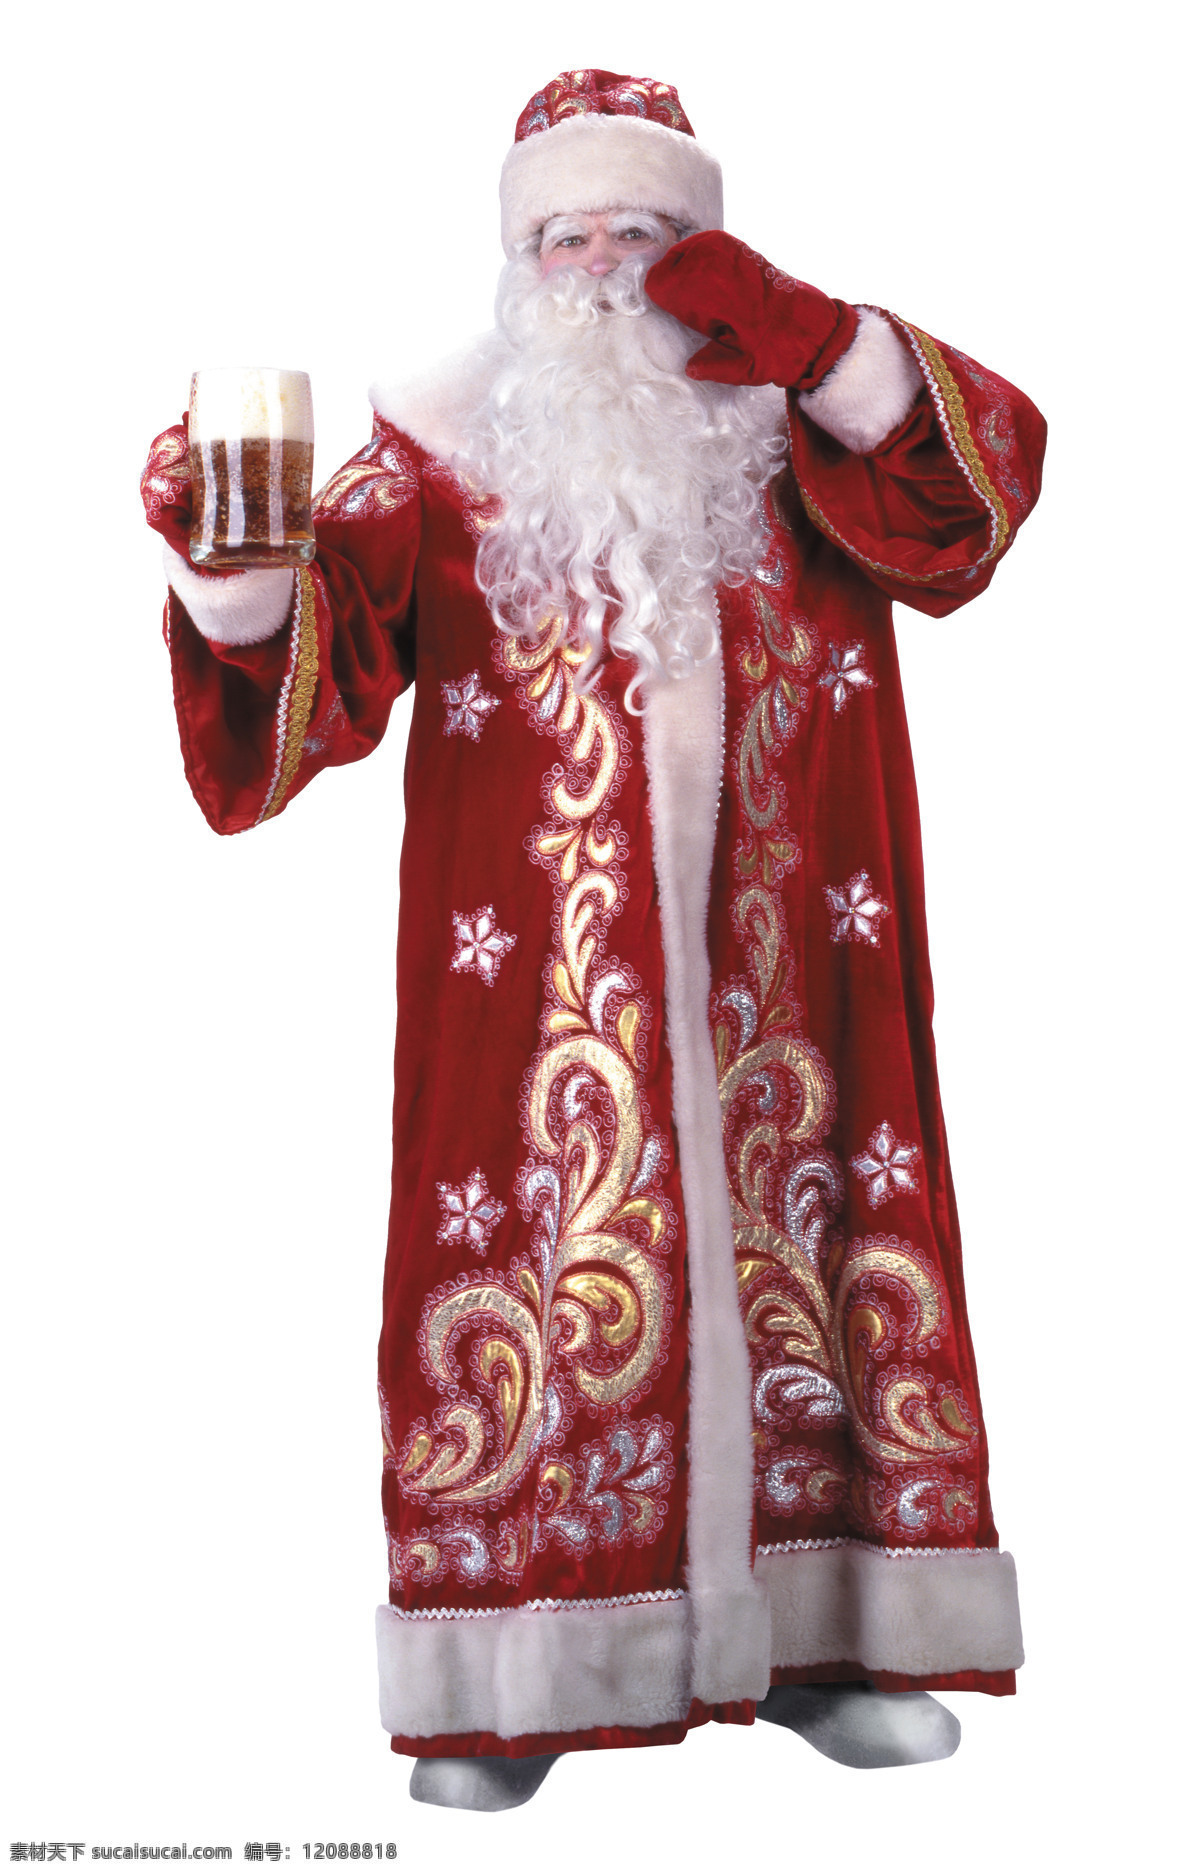 300 杯 红色 老人 啤酒 其他人物 人物图库 摄影图库 圣诞 手 啤酒杯 圣诞老人 长袍 izosoft 图像 主题 矢量图 日常生活